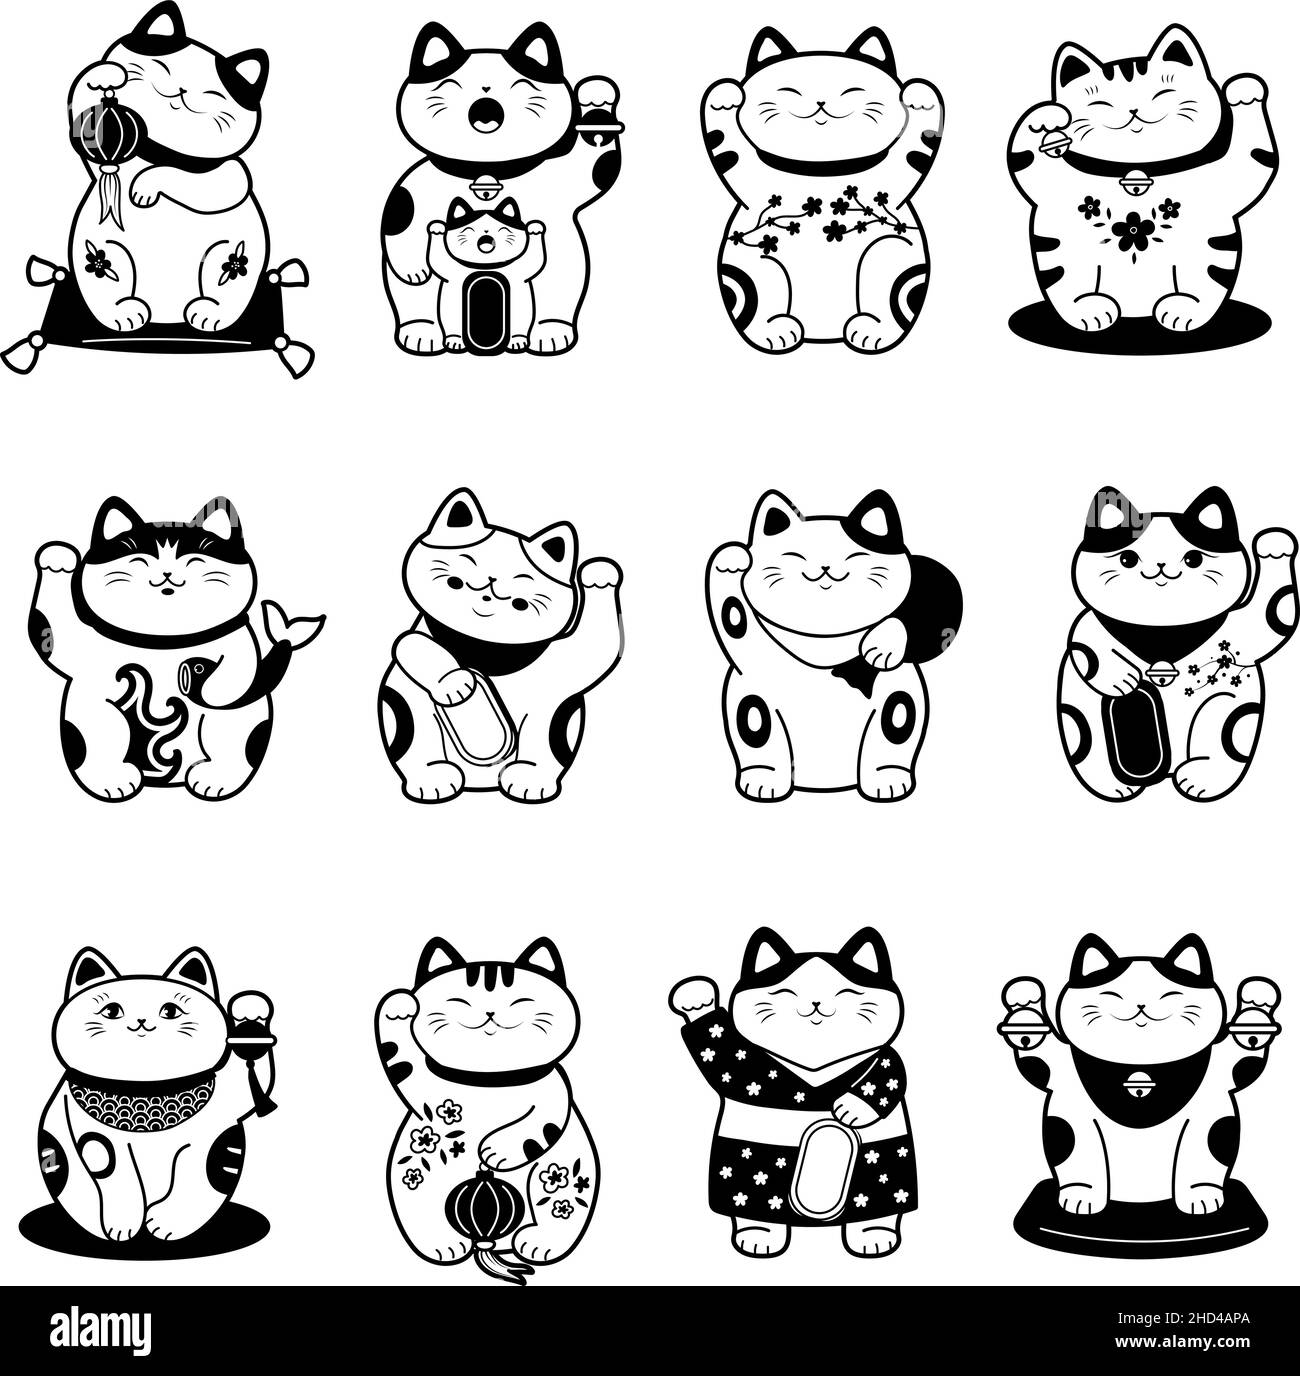 Asiatische Katze. Stilisierte monochrome Etiketten von maneki neko traditionelle asiatische Tier von Glück und Glück jüngsten Vektor-Bilder isoliert Stock Vektor